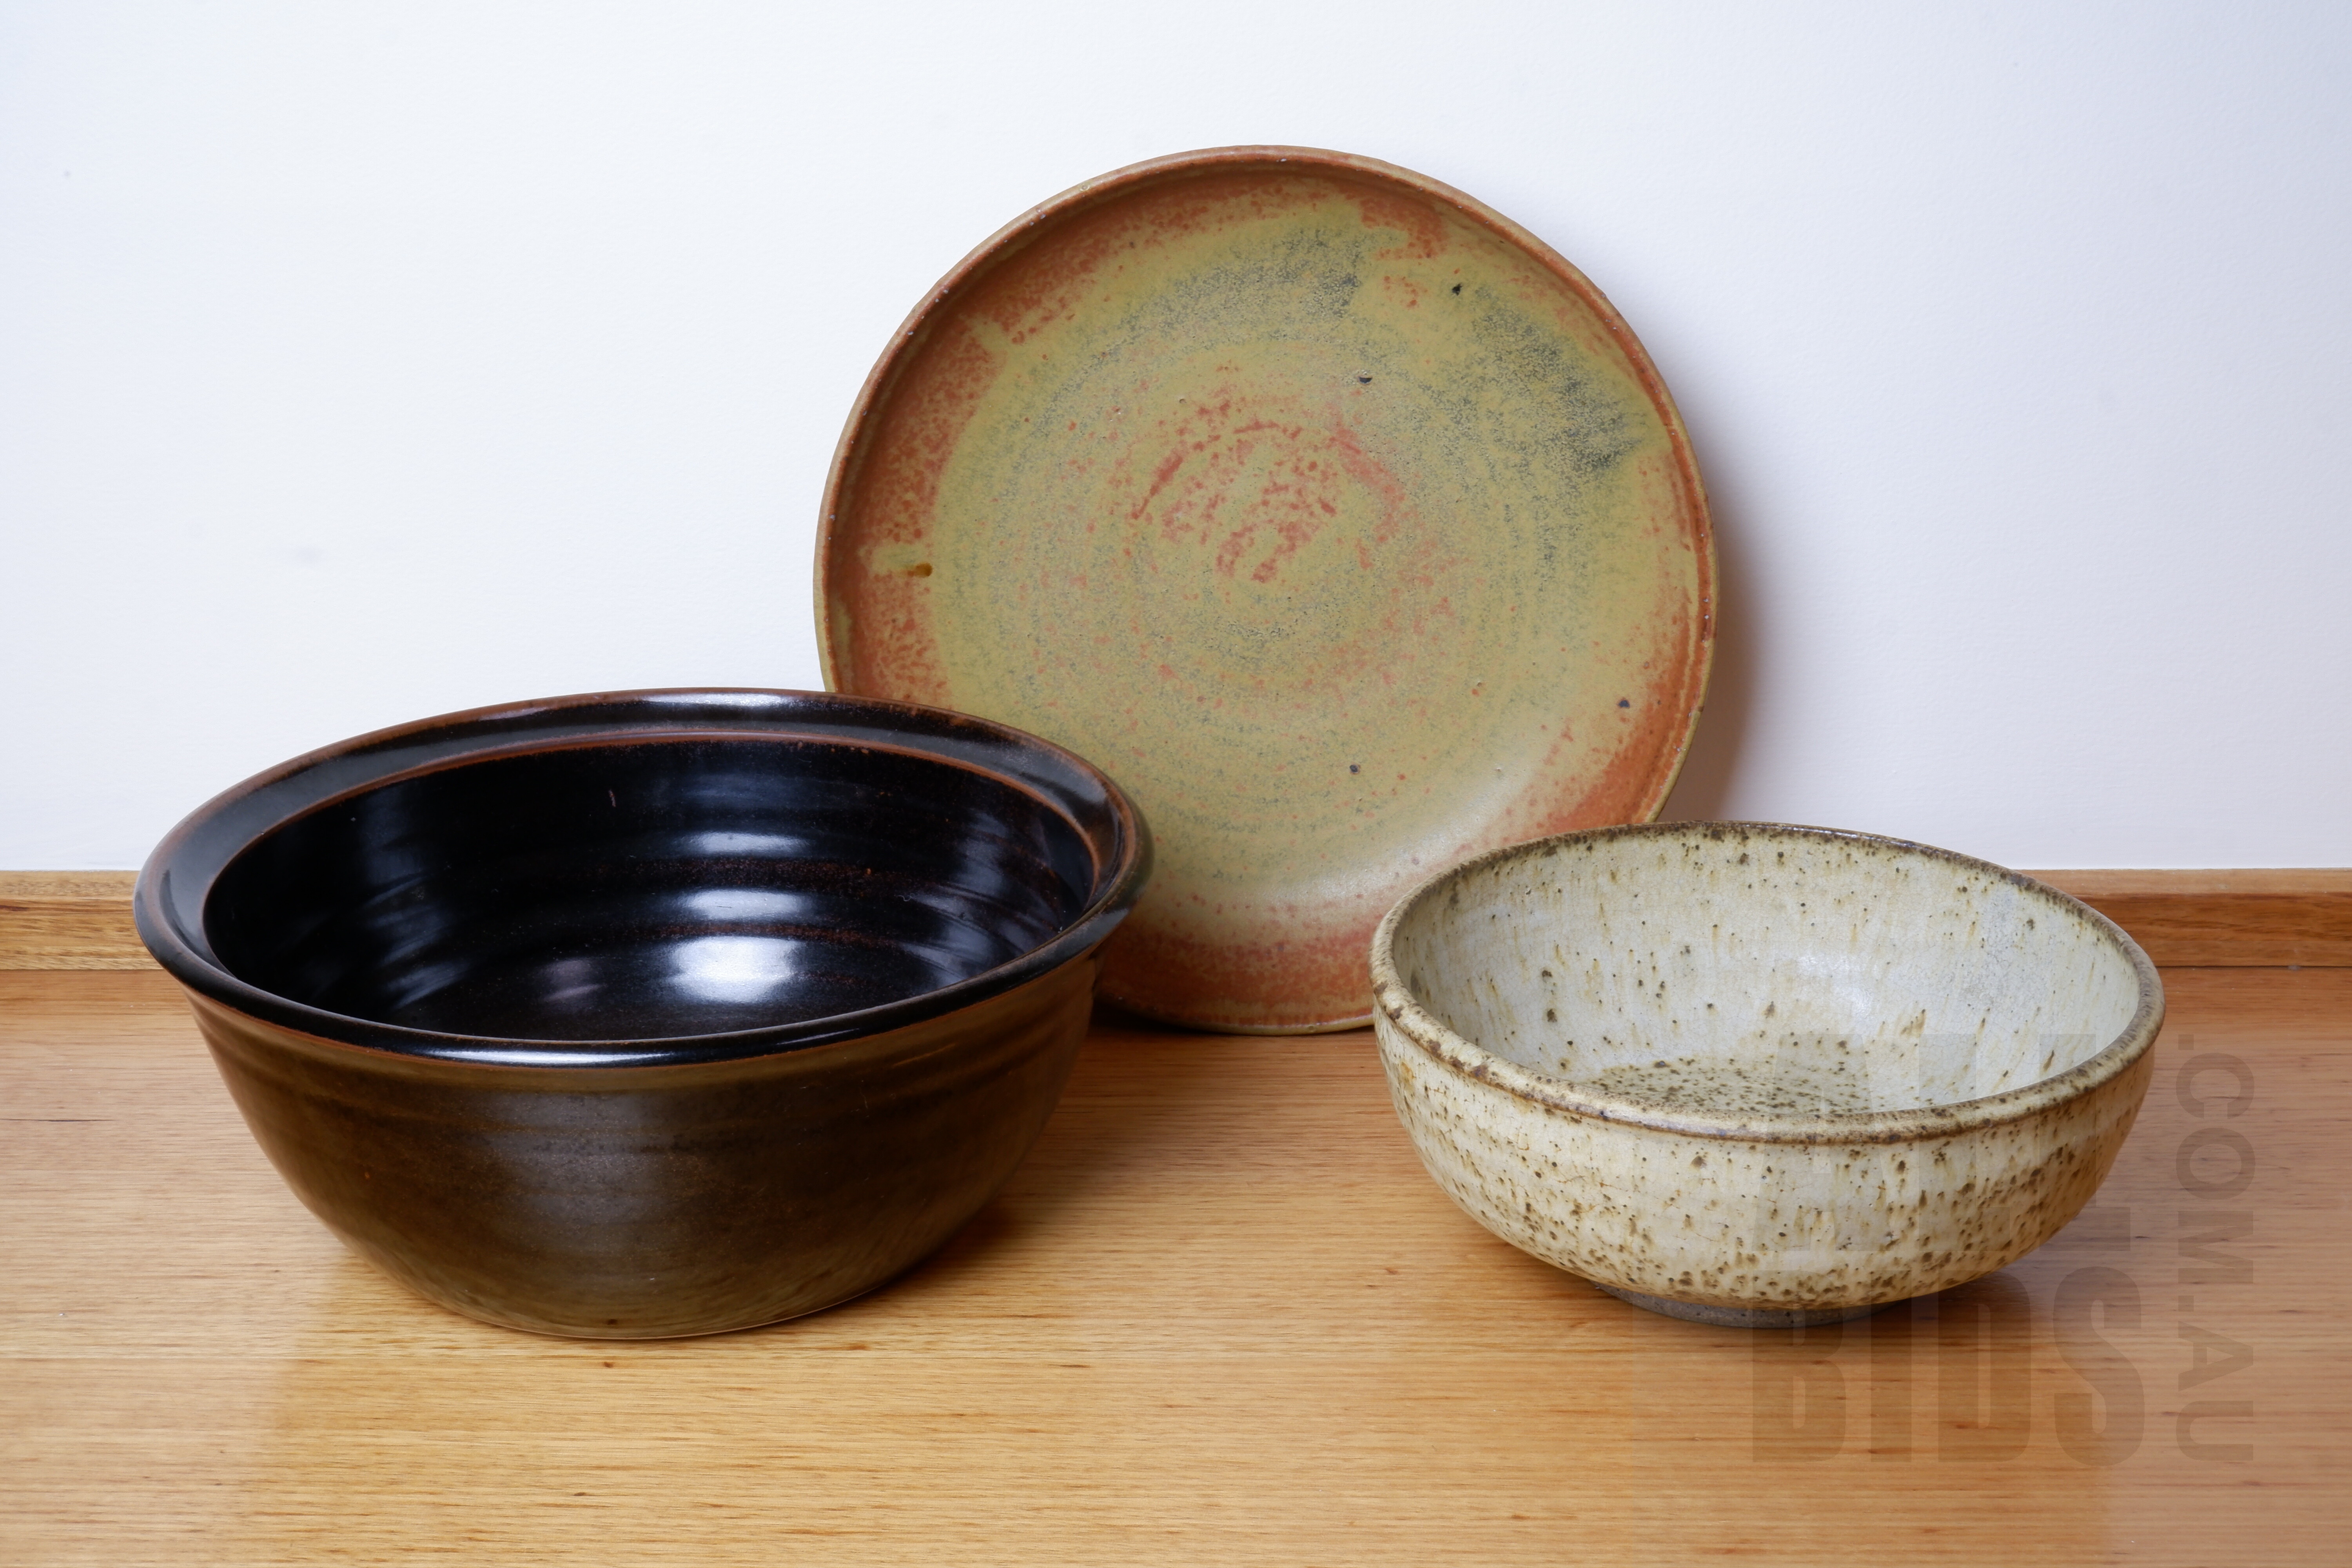 'Richard Murray Studio Ceramic Bowl with Two Other Australian Glazed Studio Ceramic Bowls'